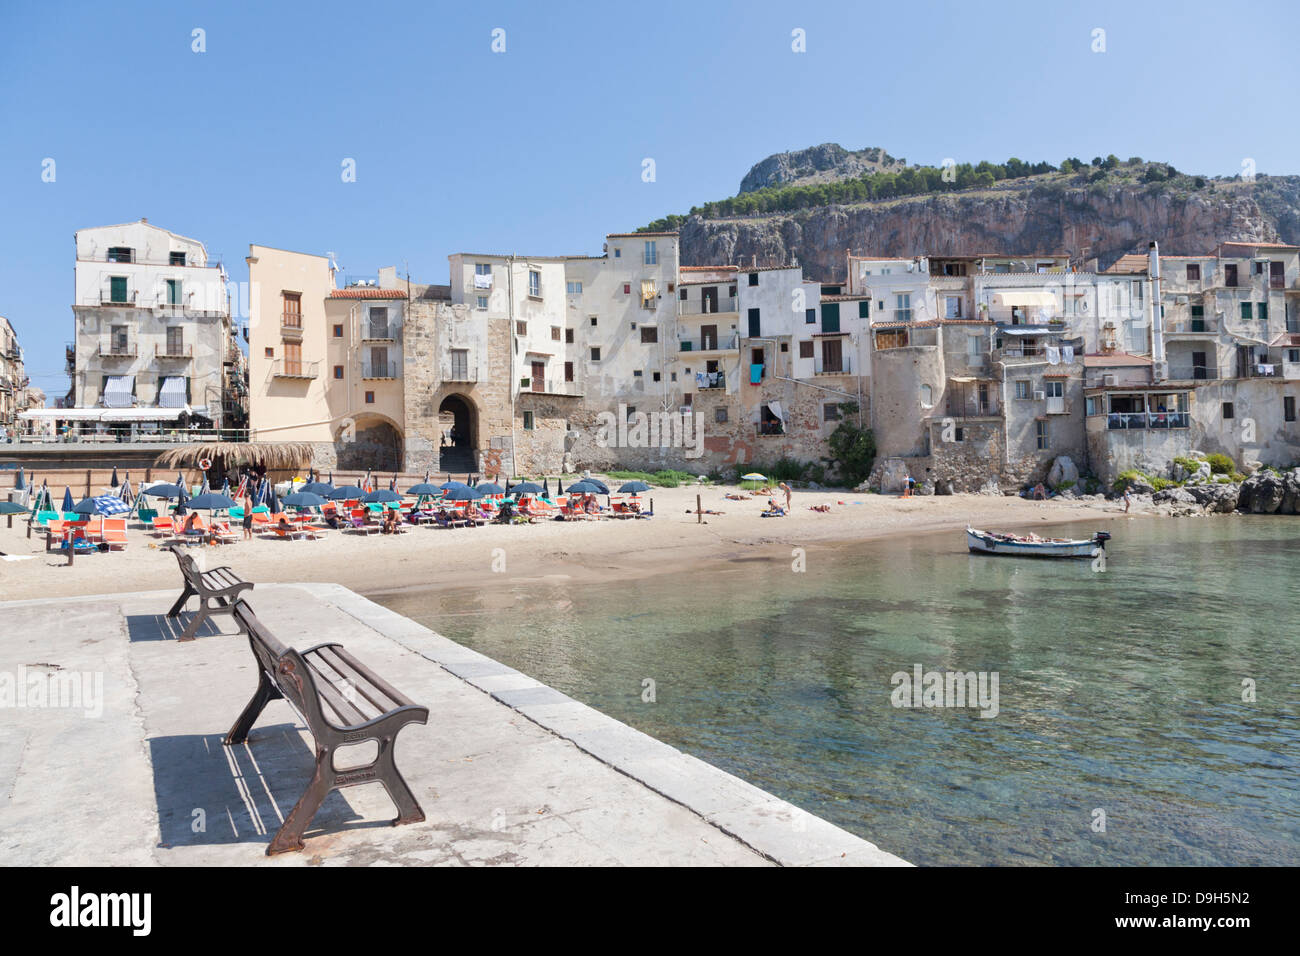 El viejo puerto y el casco antiguo de la ciudad de Cefalu, Sicilia, Italia Foto de stock